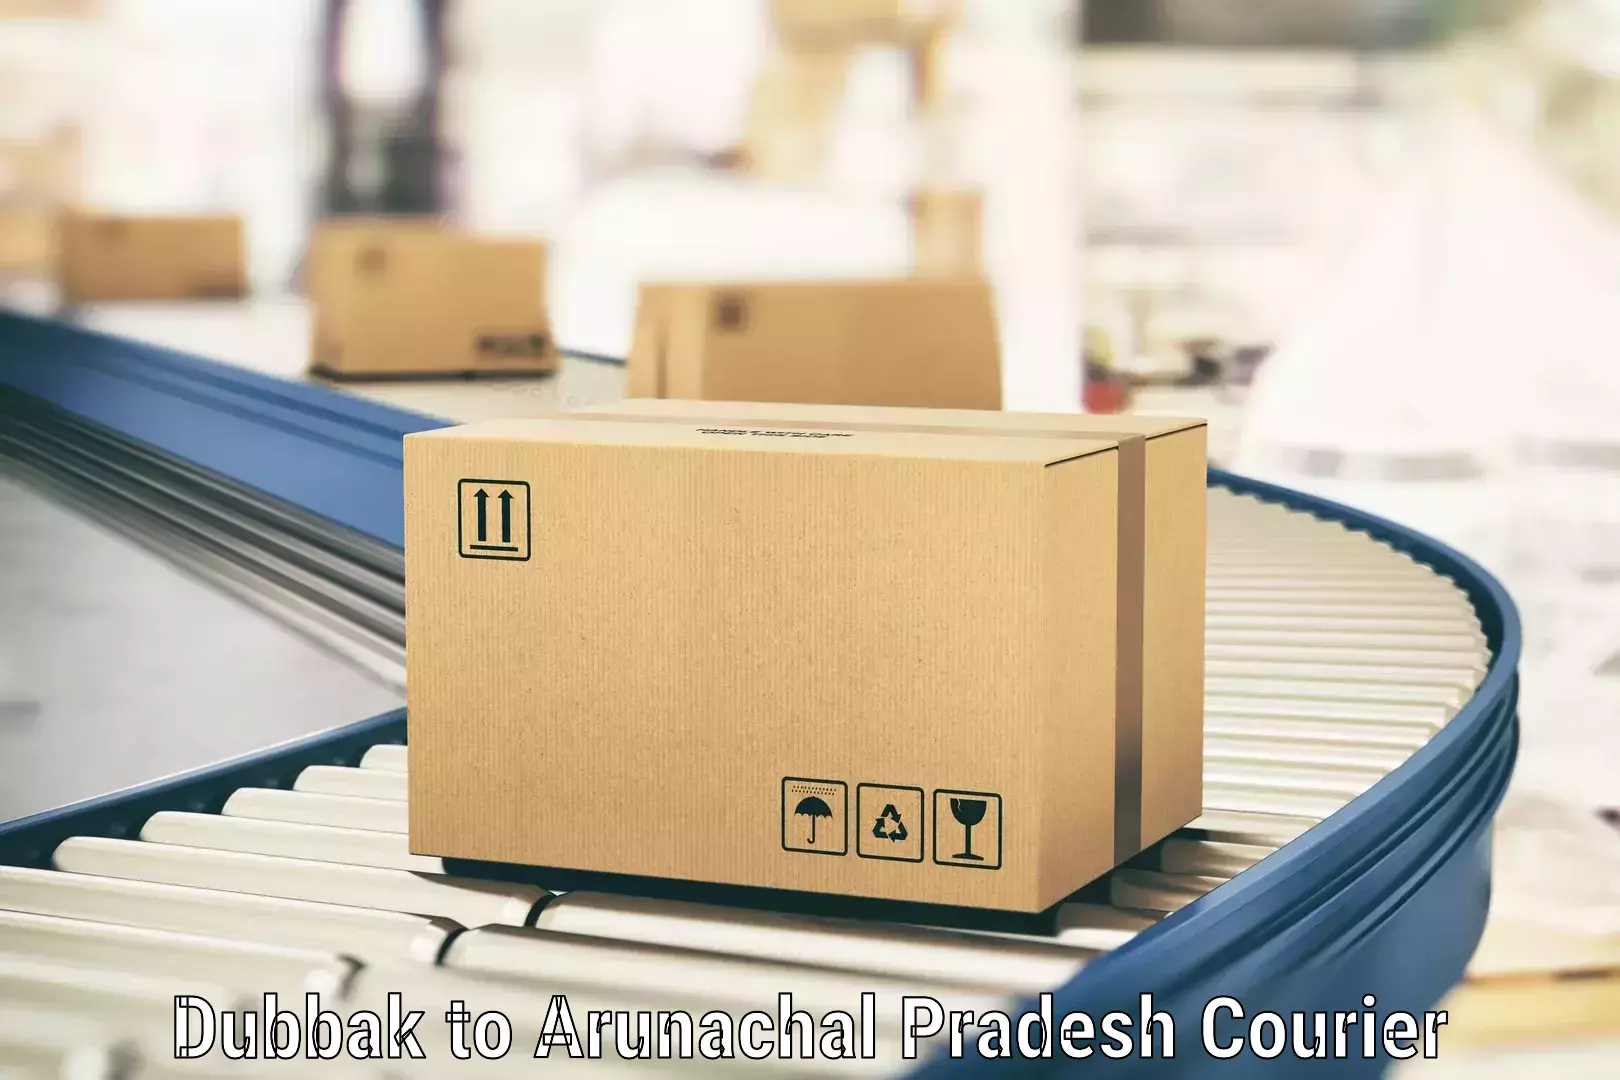 Reliable parcel services Dubbak to Lohit